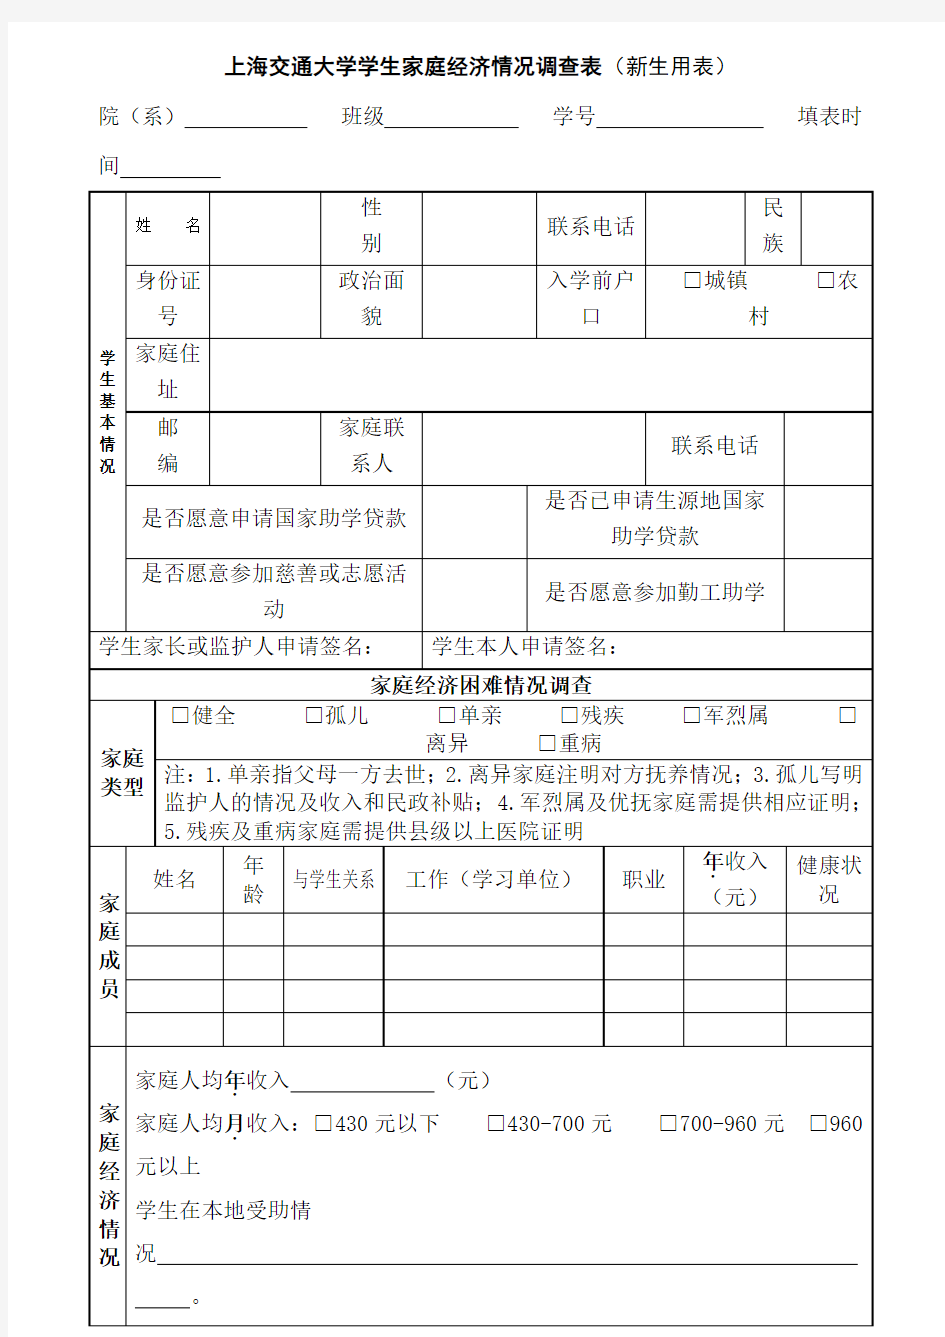 上海交通大学学生家庭经济情况调查表(新生用表)